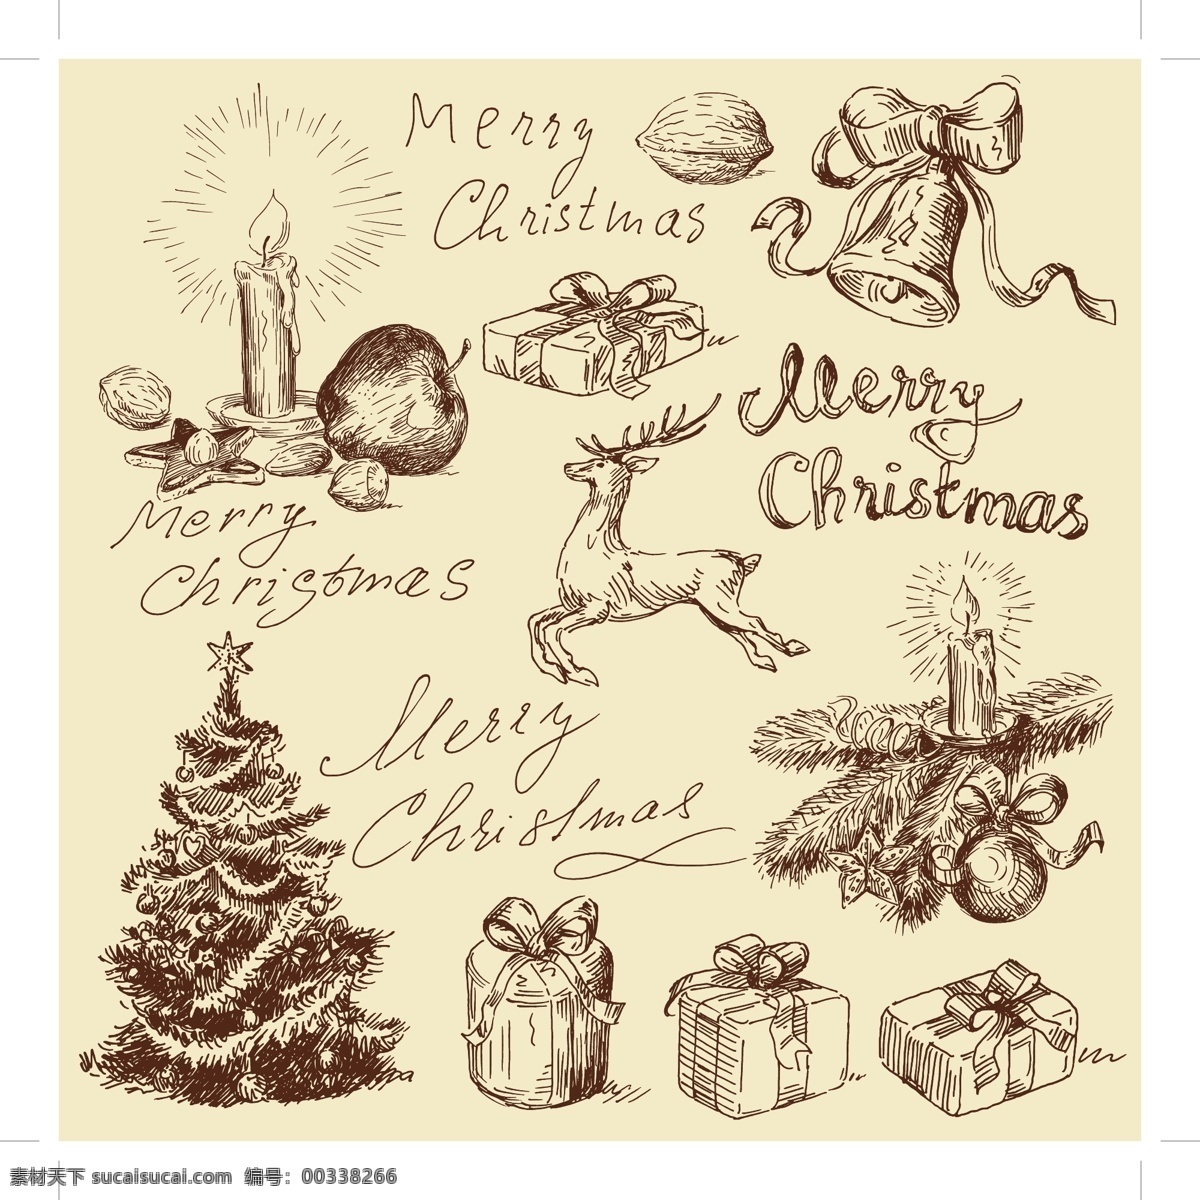 旧货 圣诞 插画 矢量 插图 圣诞插图 圣诞老人 老式的 旧货圣诞插图 自由 矢量图 其他矢量图